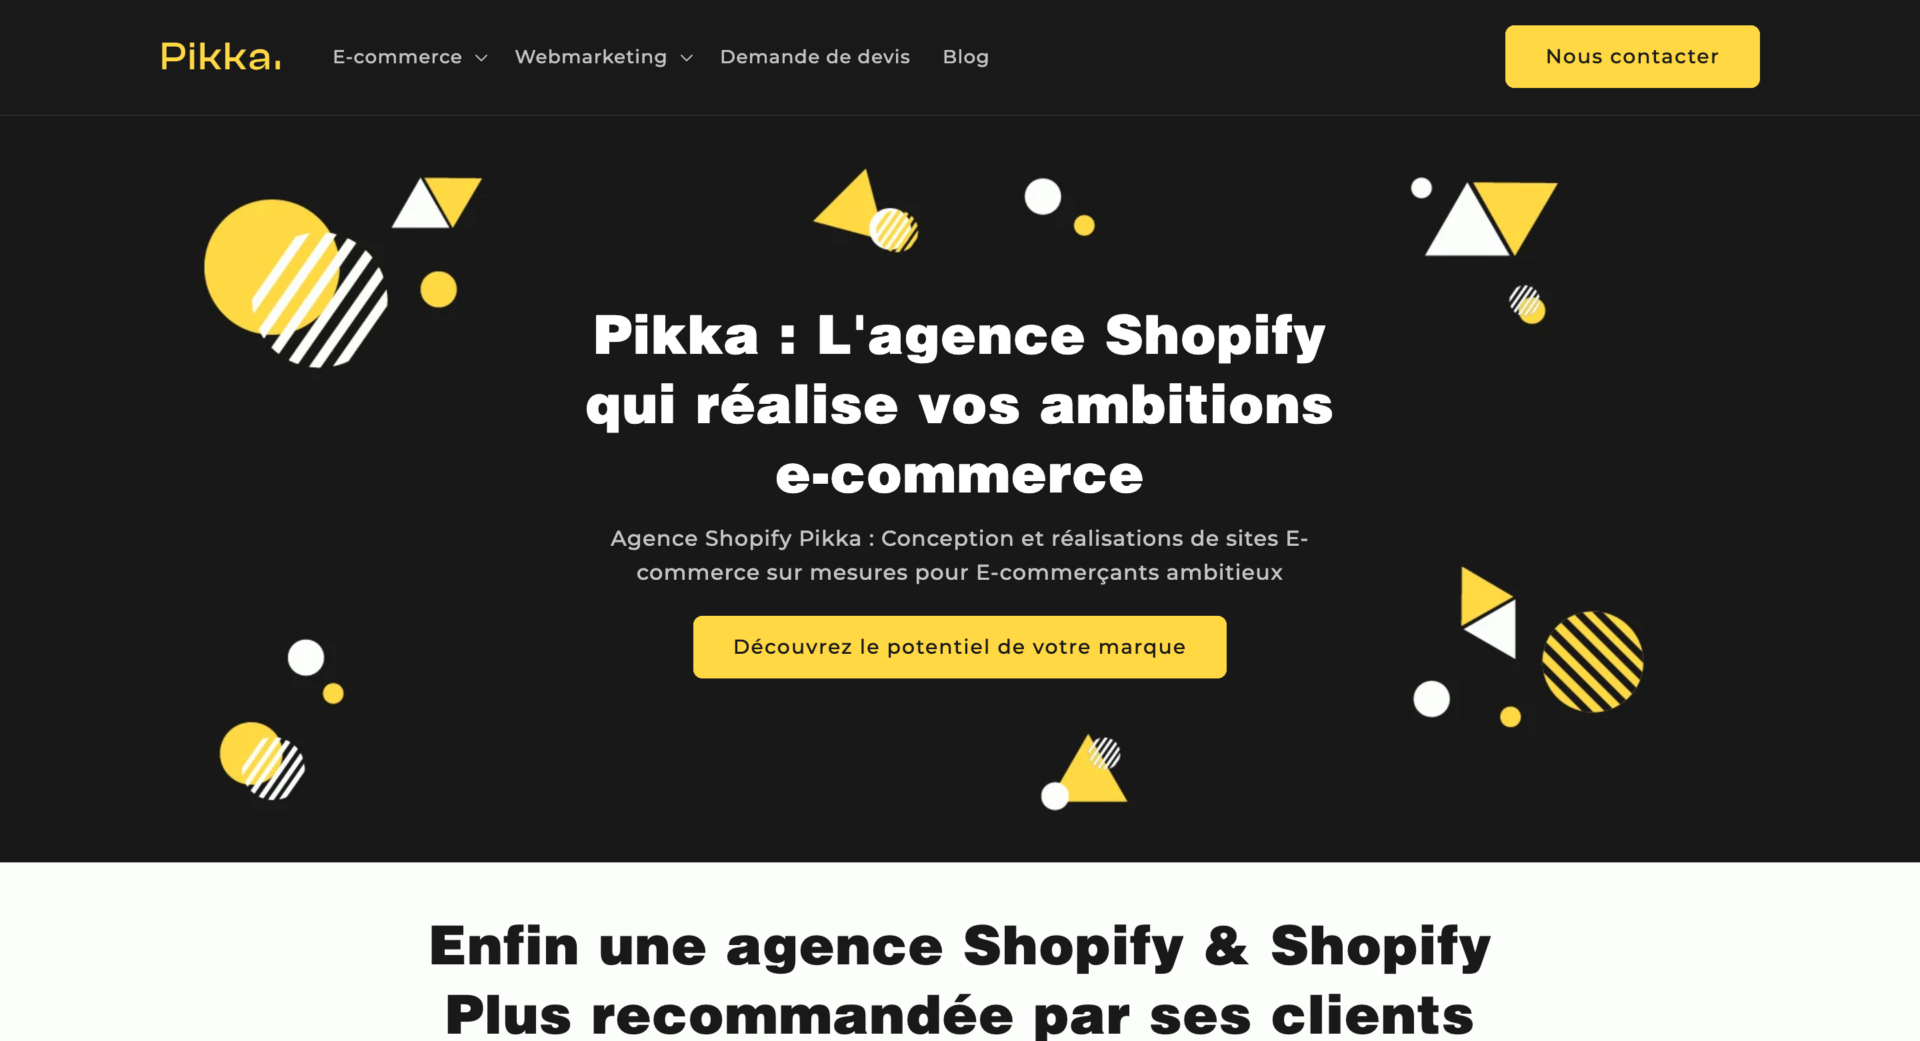 Fiche client : comment en créer pour votre entreprise ? - Shopify France